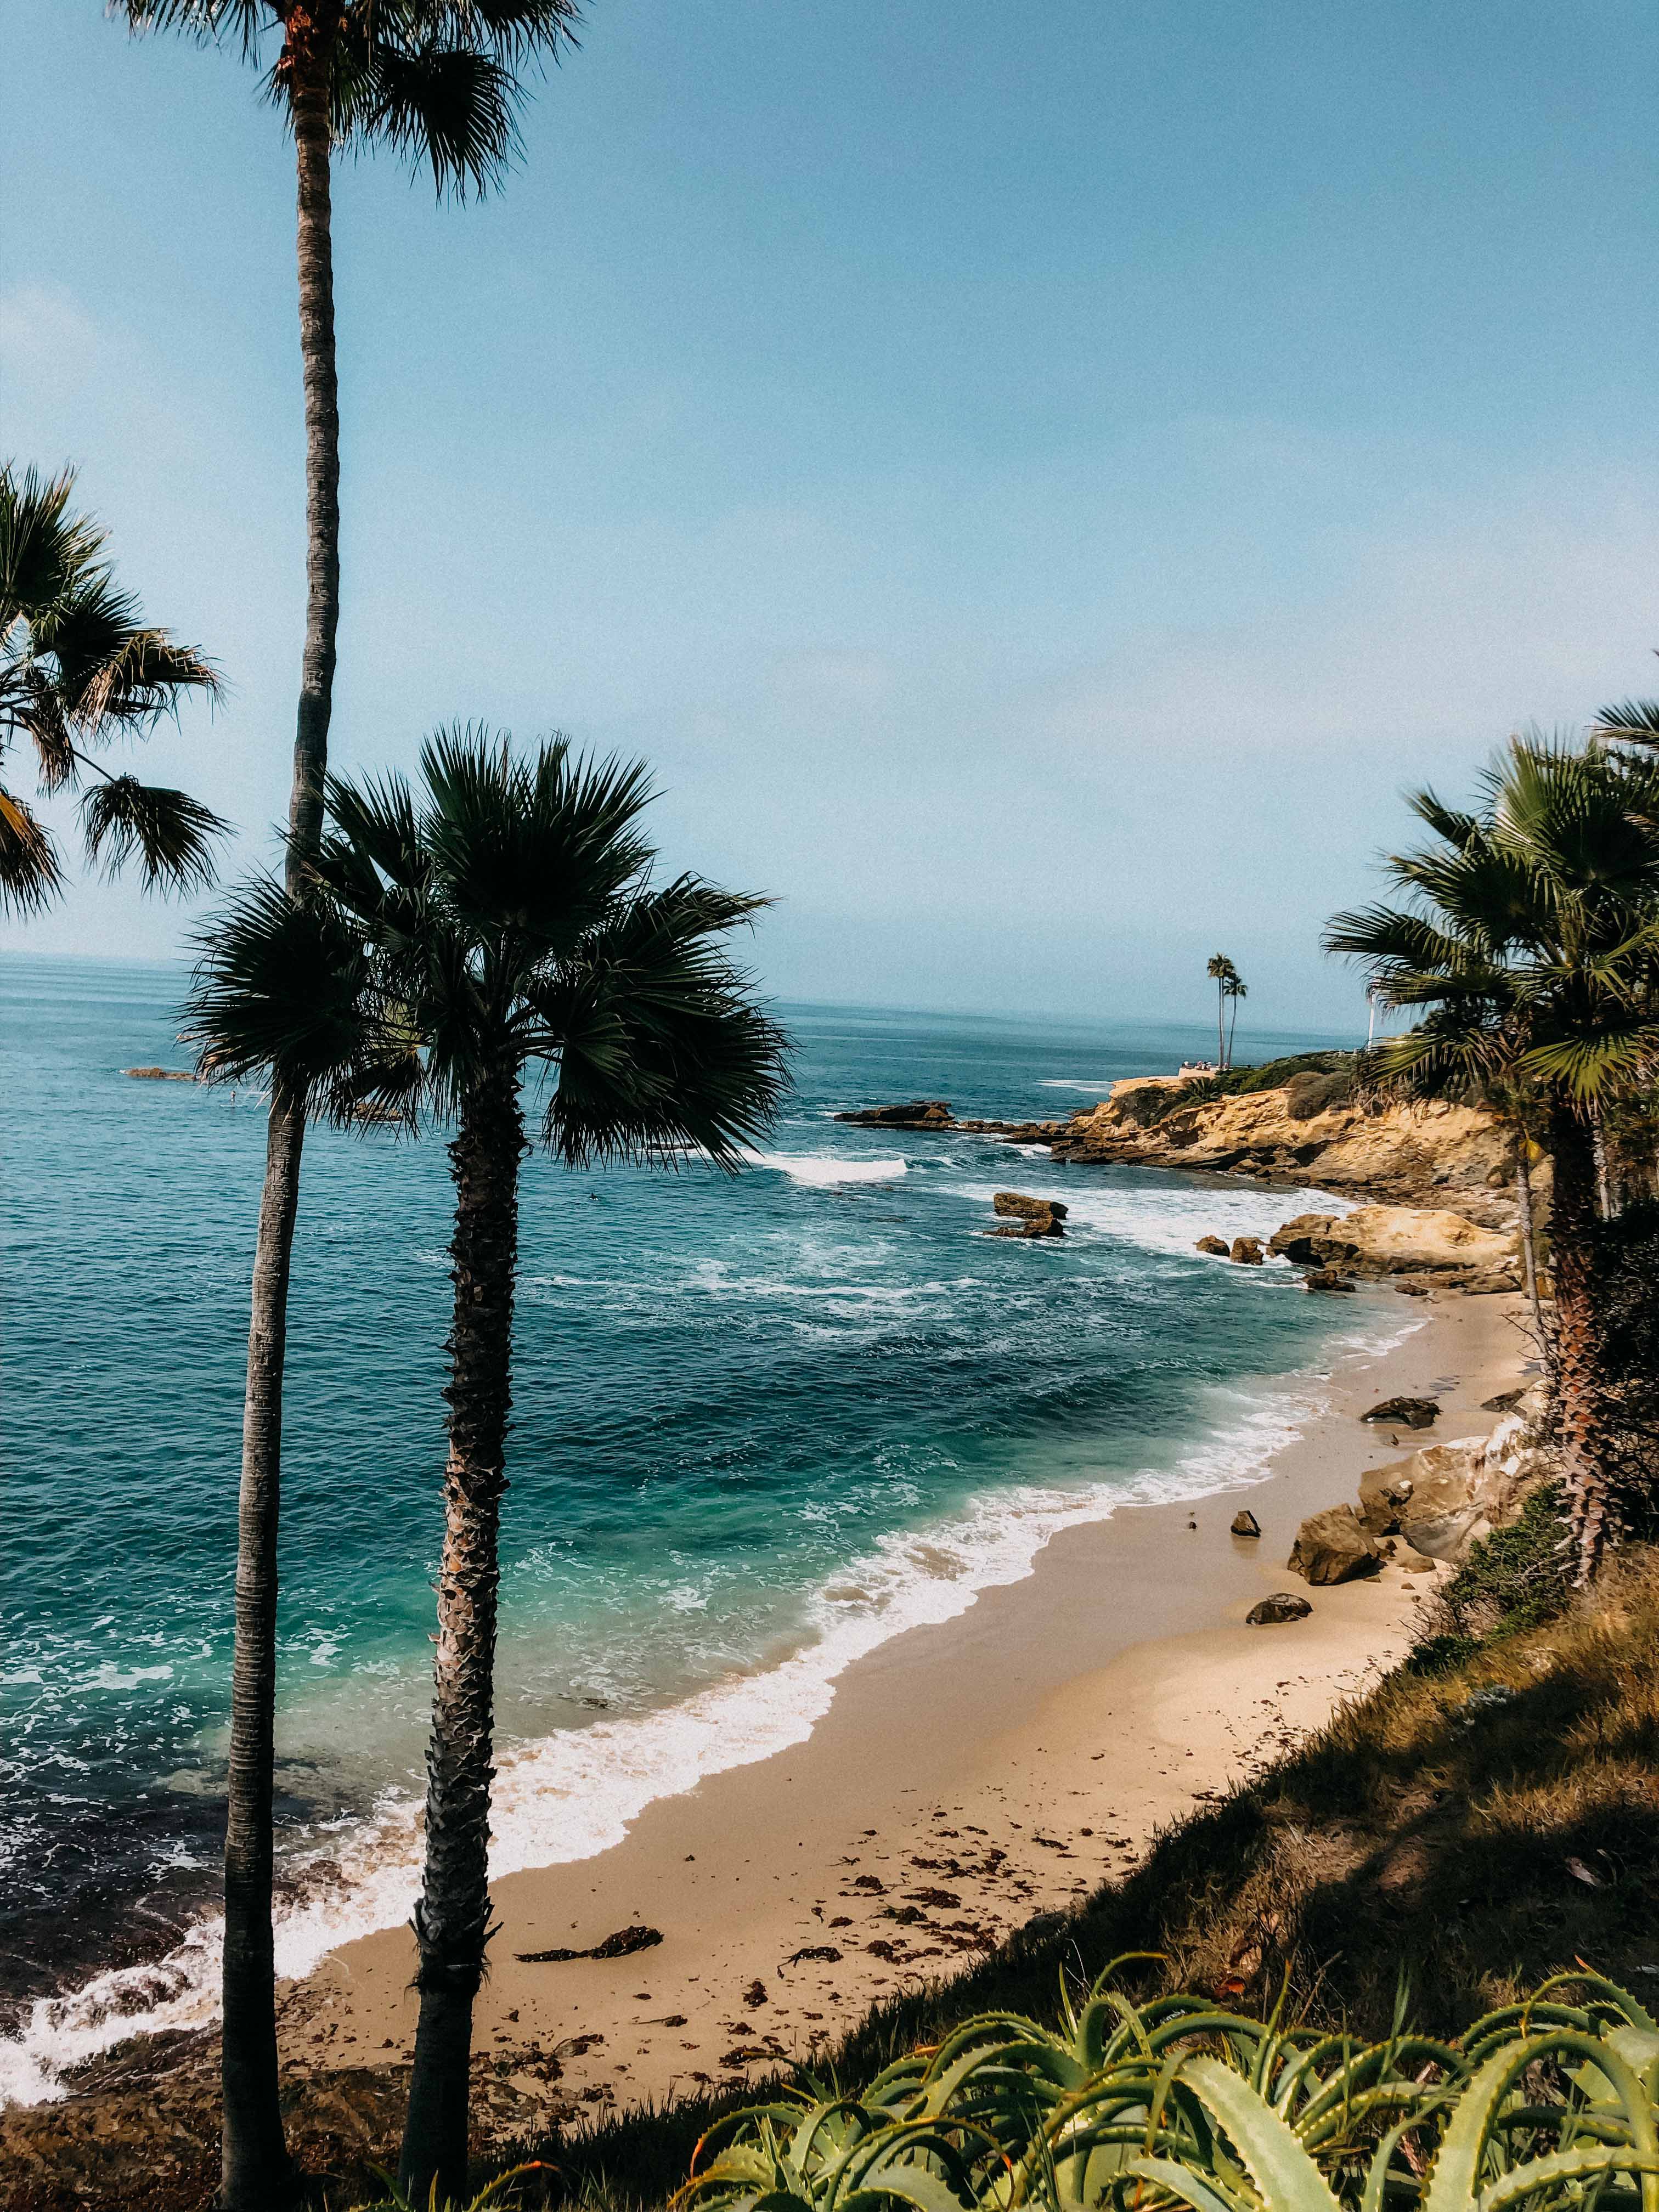 Top Insider Tipps Los Angeles Laguna Beach Traumstrände LA beste Strände Tipp bester Strand USA Amerika 5